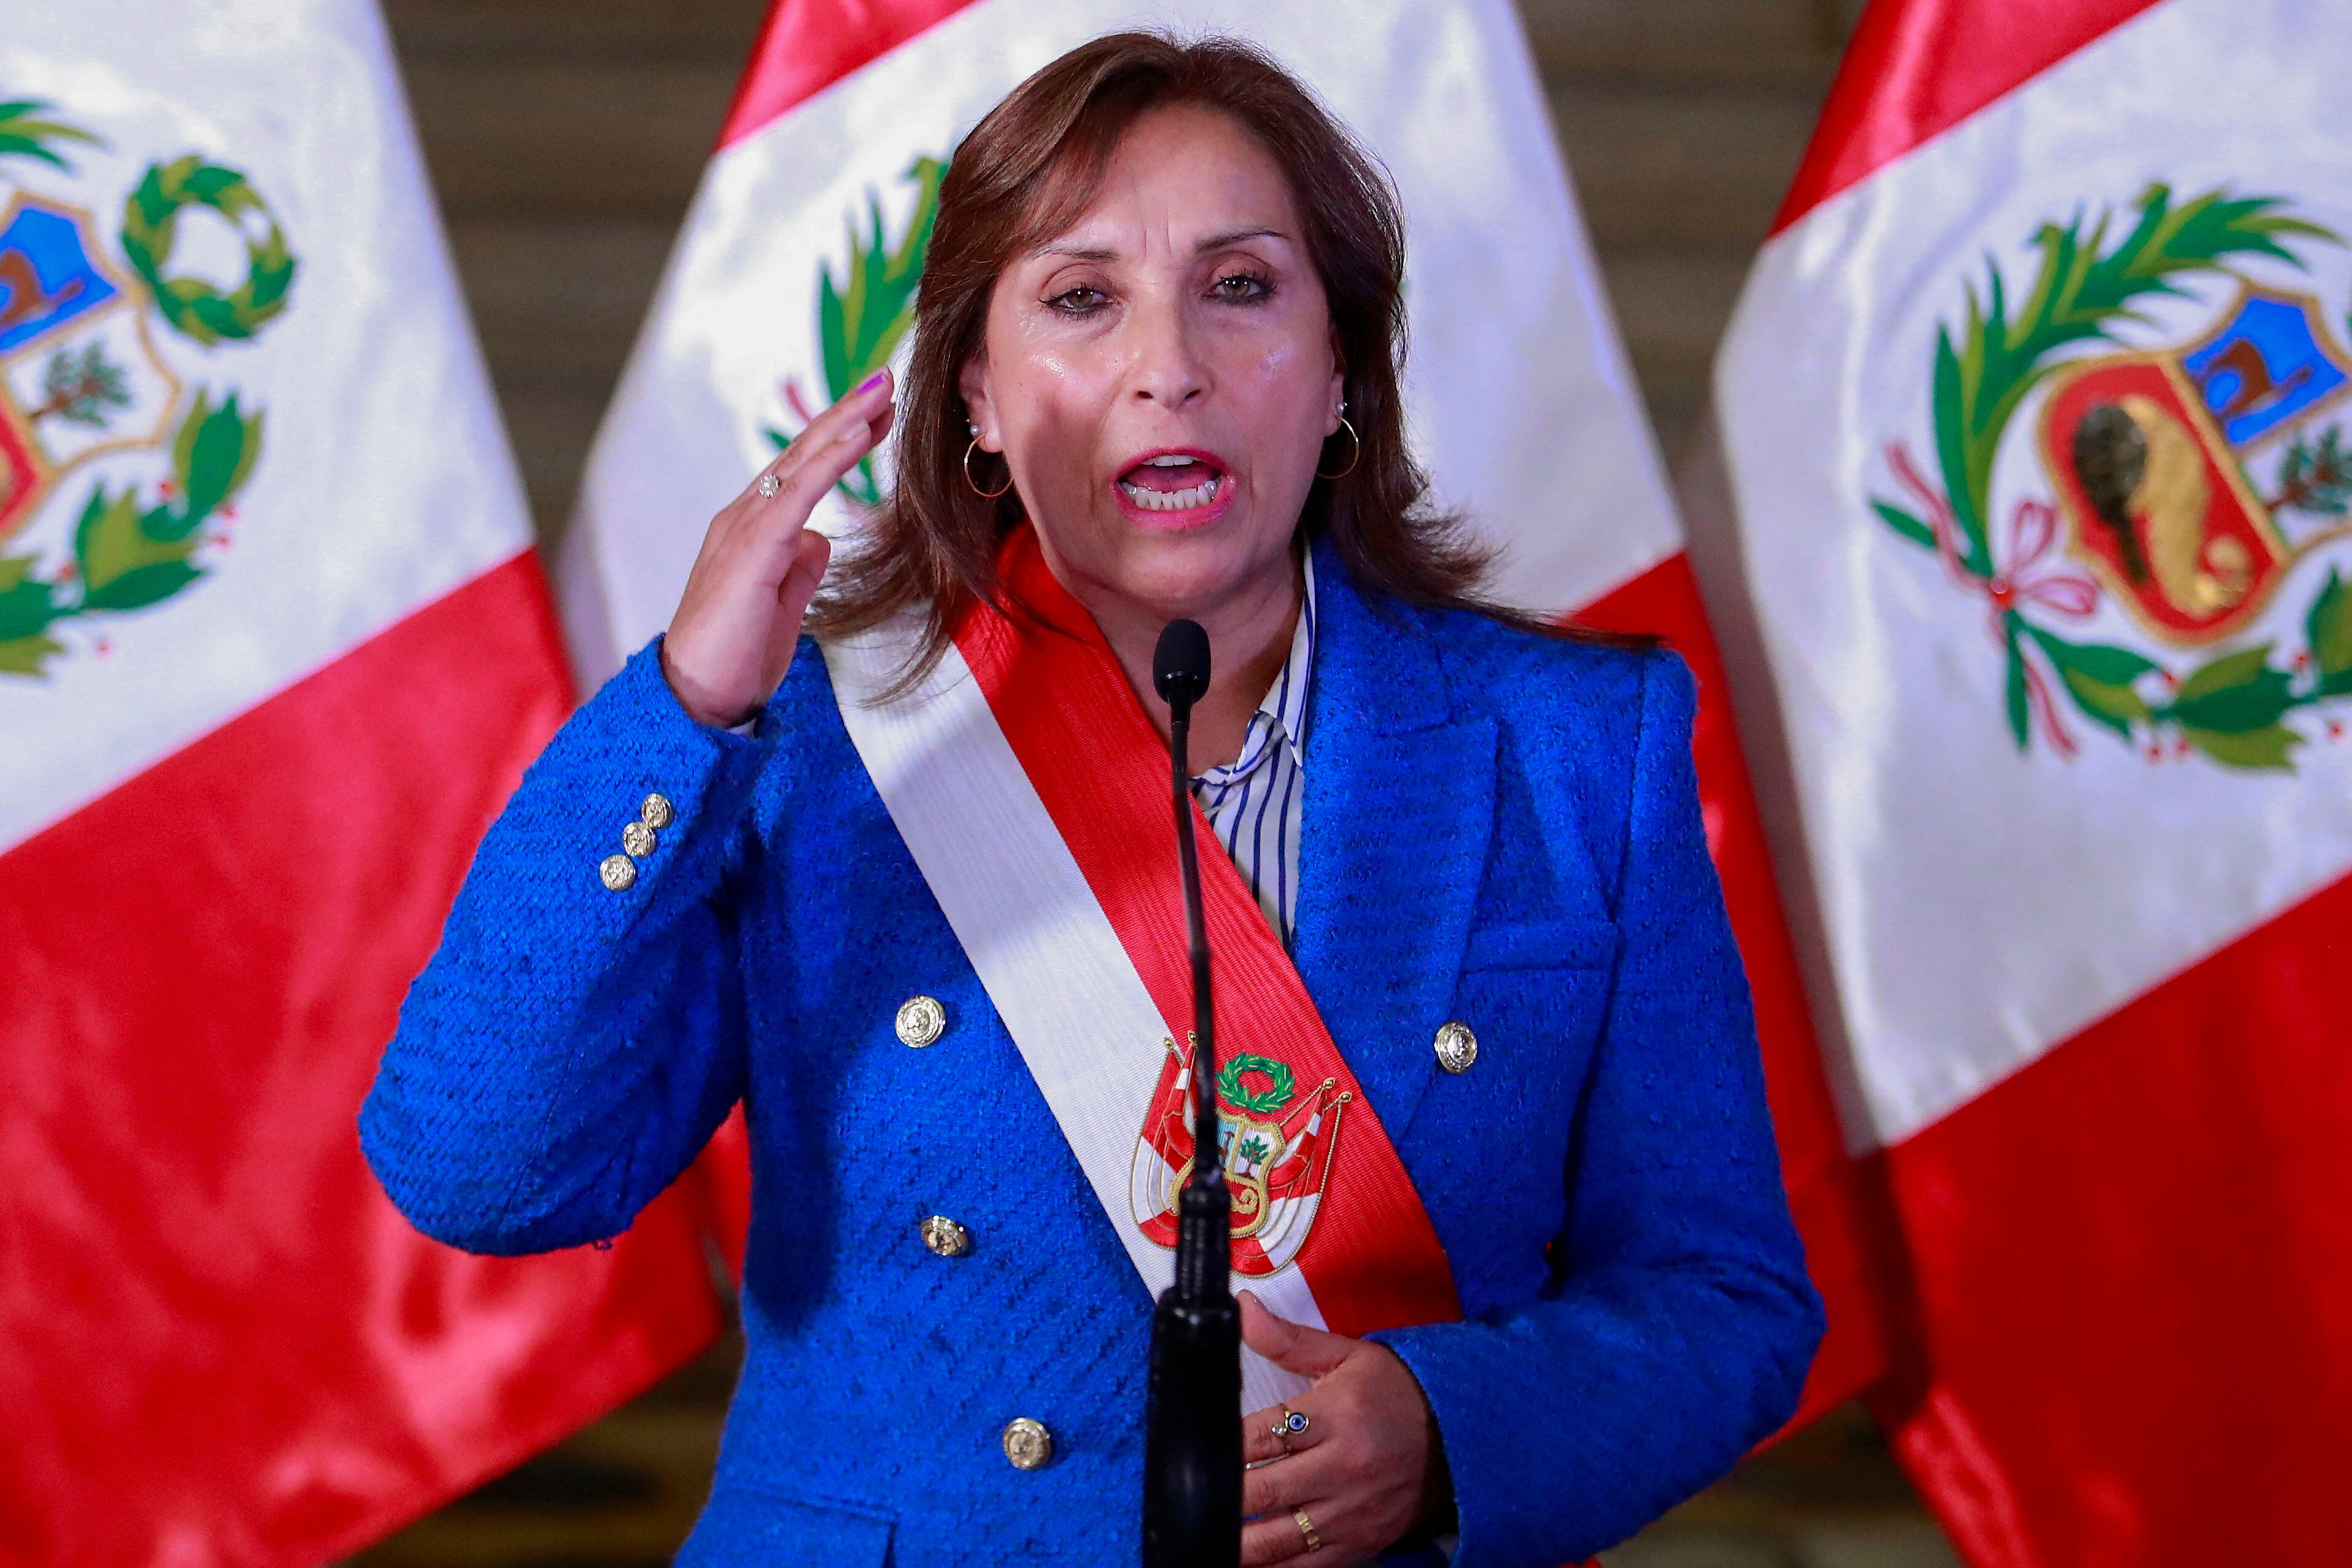 ‘Estamos en una democracia frágil’ pero se puede reforzar, dice presidenta de Perú